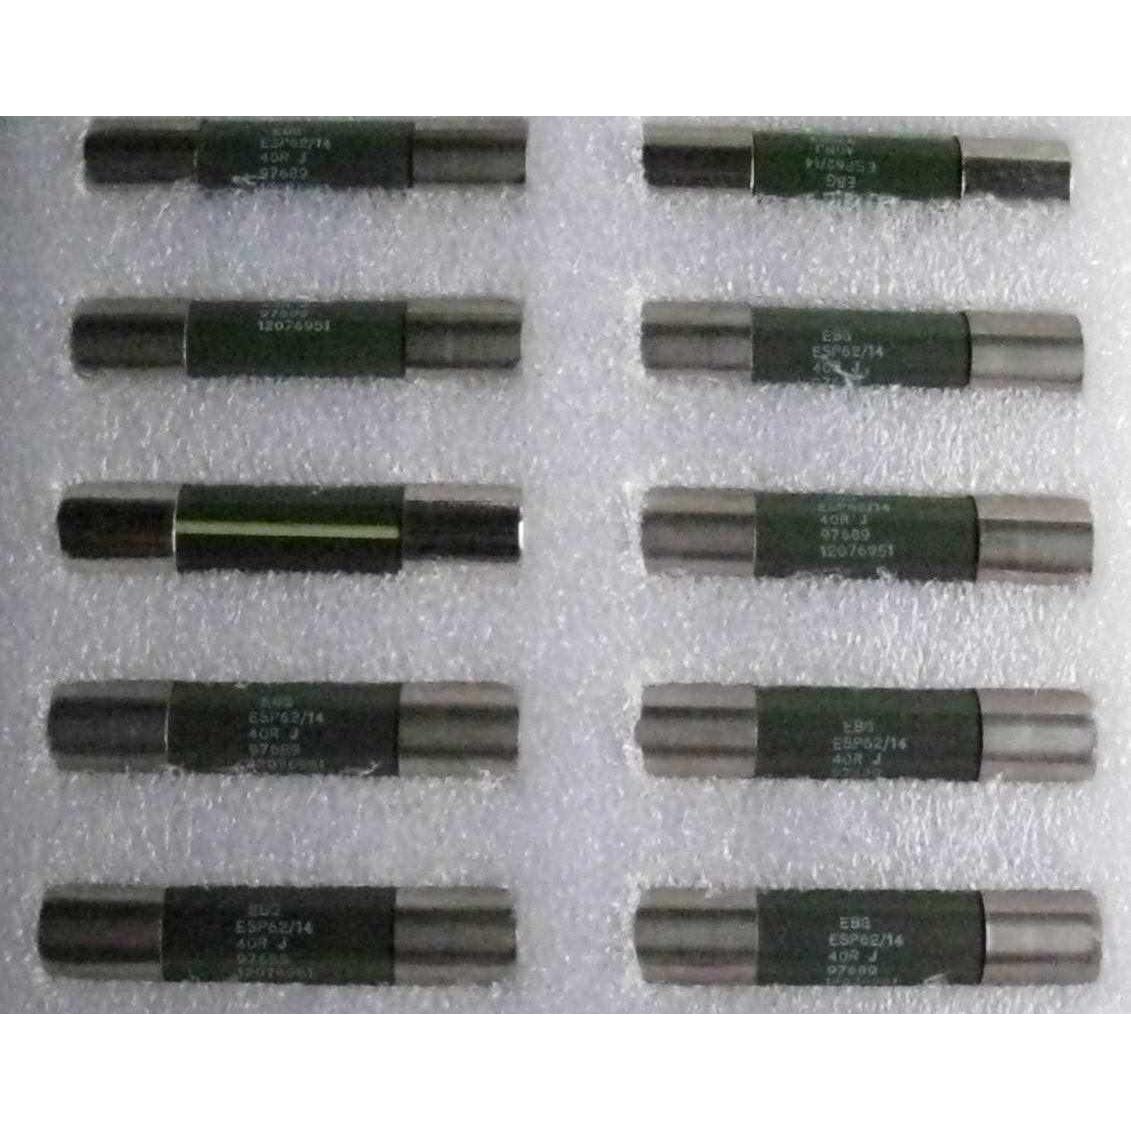 西门子变频器90kw和110KW缓冲电阻充电电阻EBG ESP62/14 40R J 电子元器件市场 其它元器件 原图主图